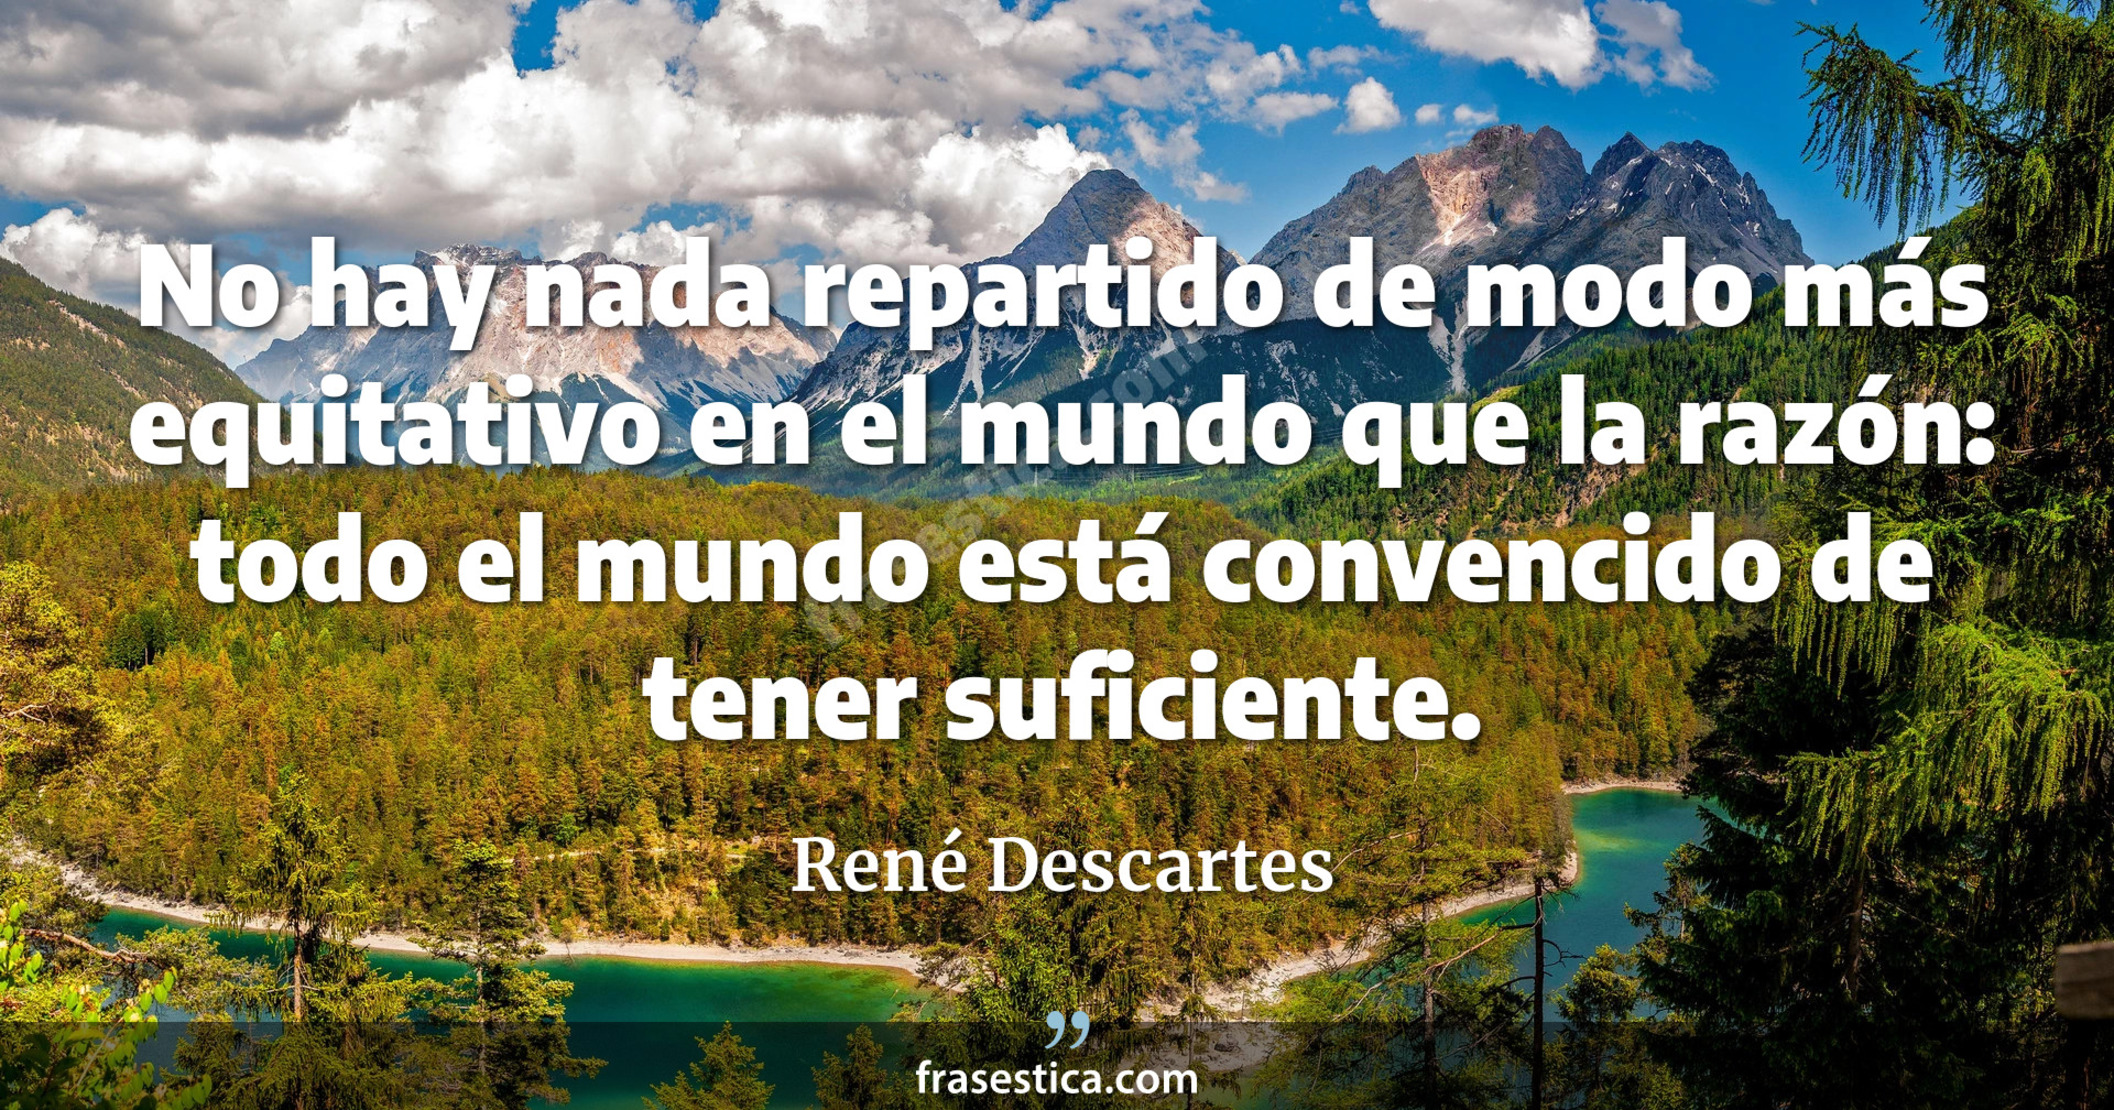 No hay nada repartido de modo más equitativo en el mundo que la razón: todo el mundo está convencido de tener suficiente. - René Descartes